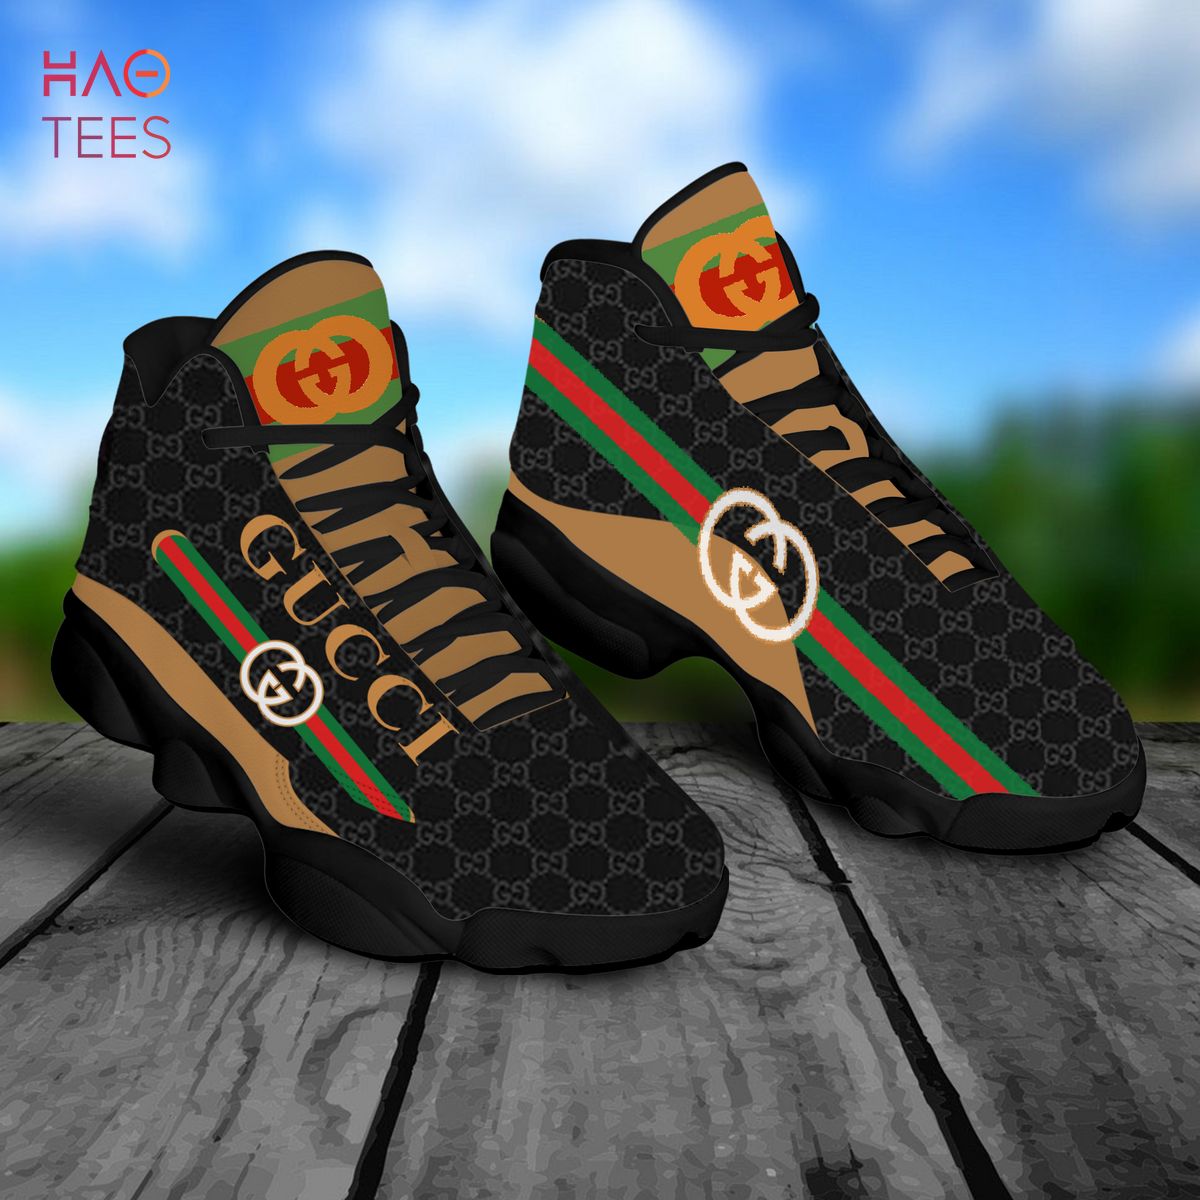 Gucci x Air Jordan 13 Black Shoes POD Design